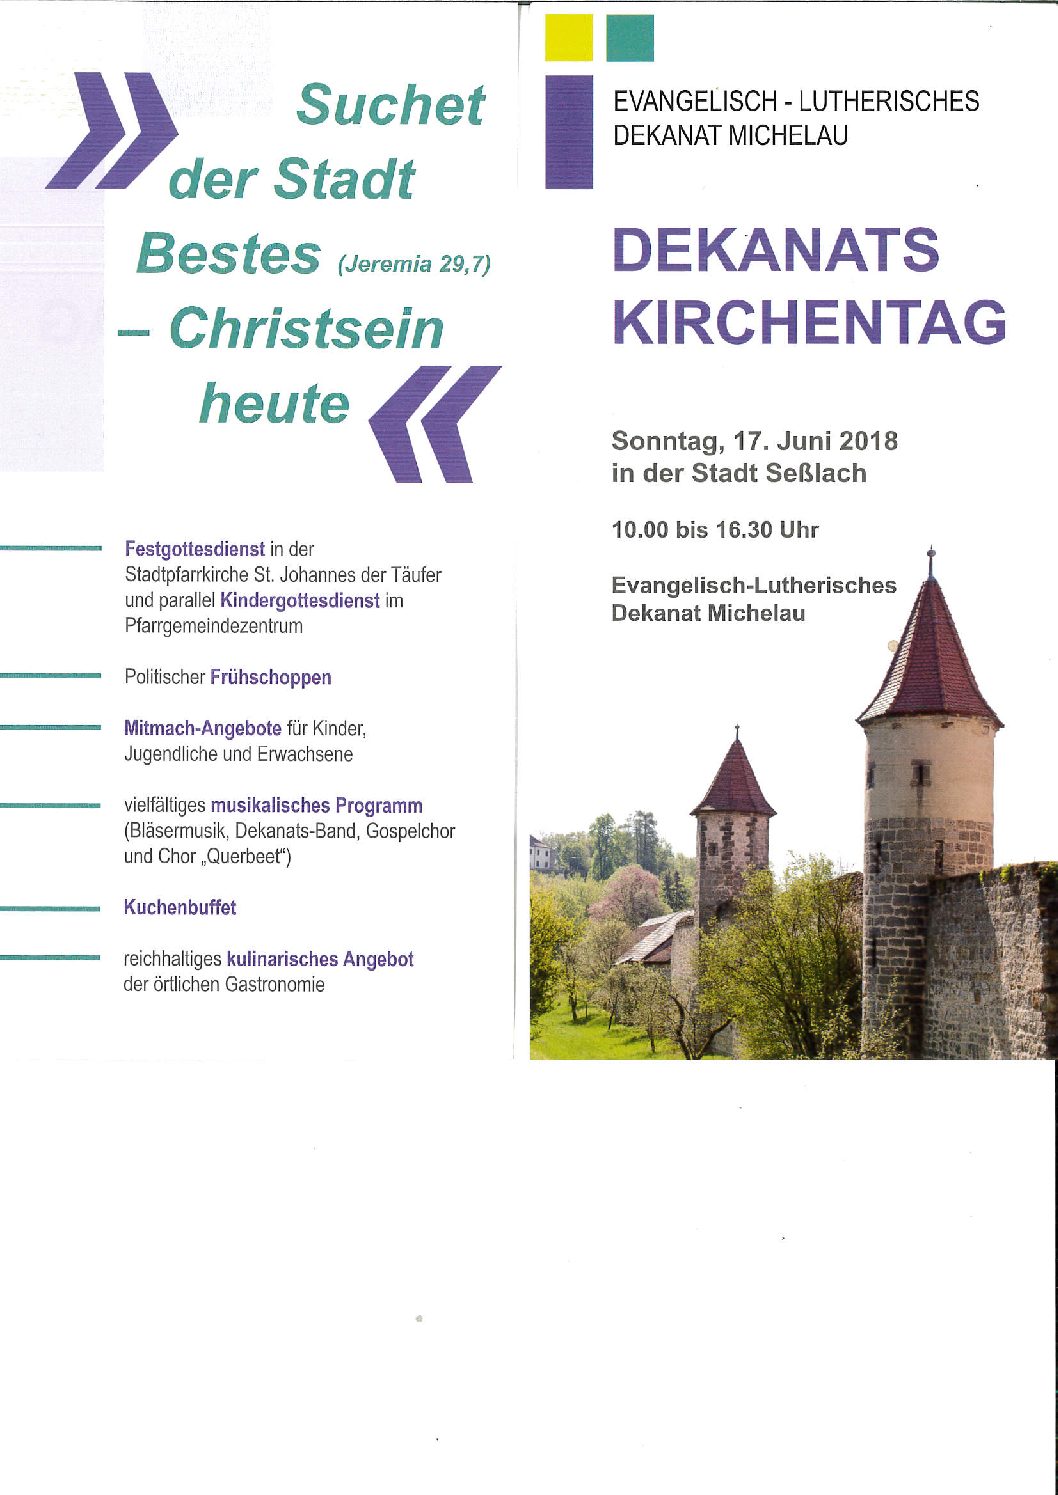 Dekanatskirchentag am 17. Juni 2018 in Seßlach – wir sind dabei –